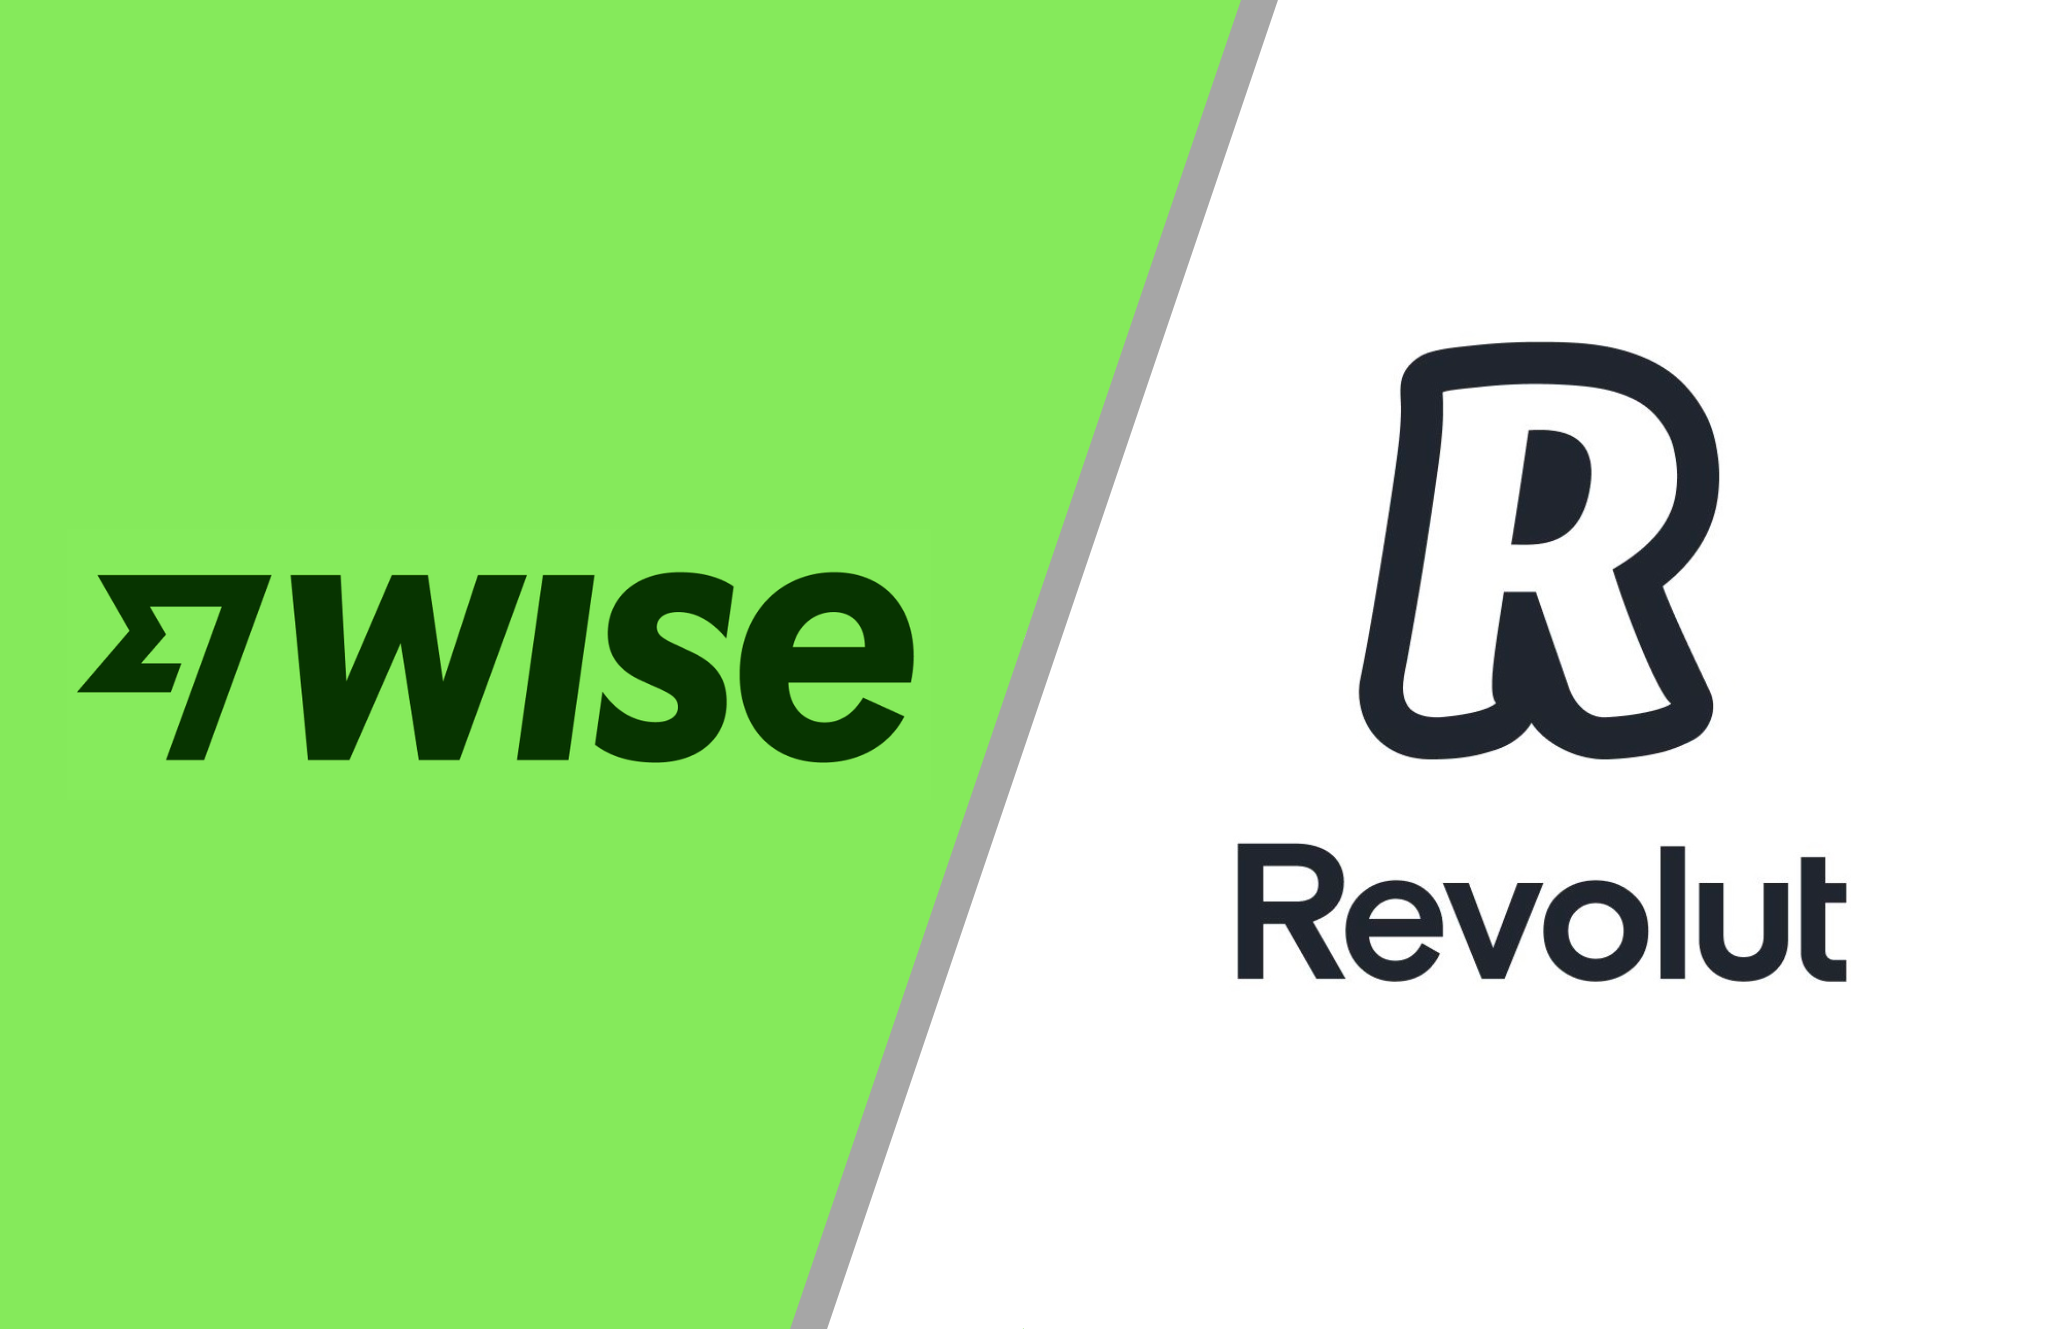 Logo wise na zielonym tle oraz logo Revolut na białym tle.